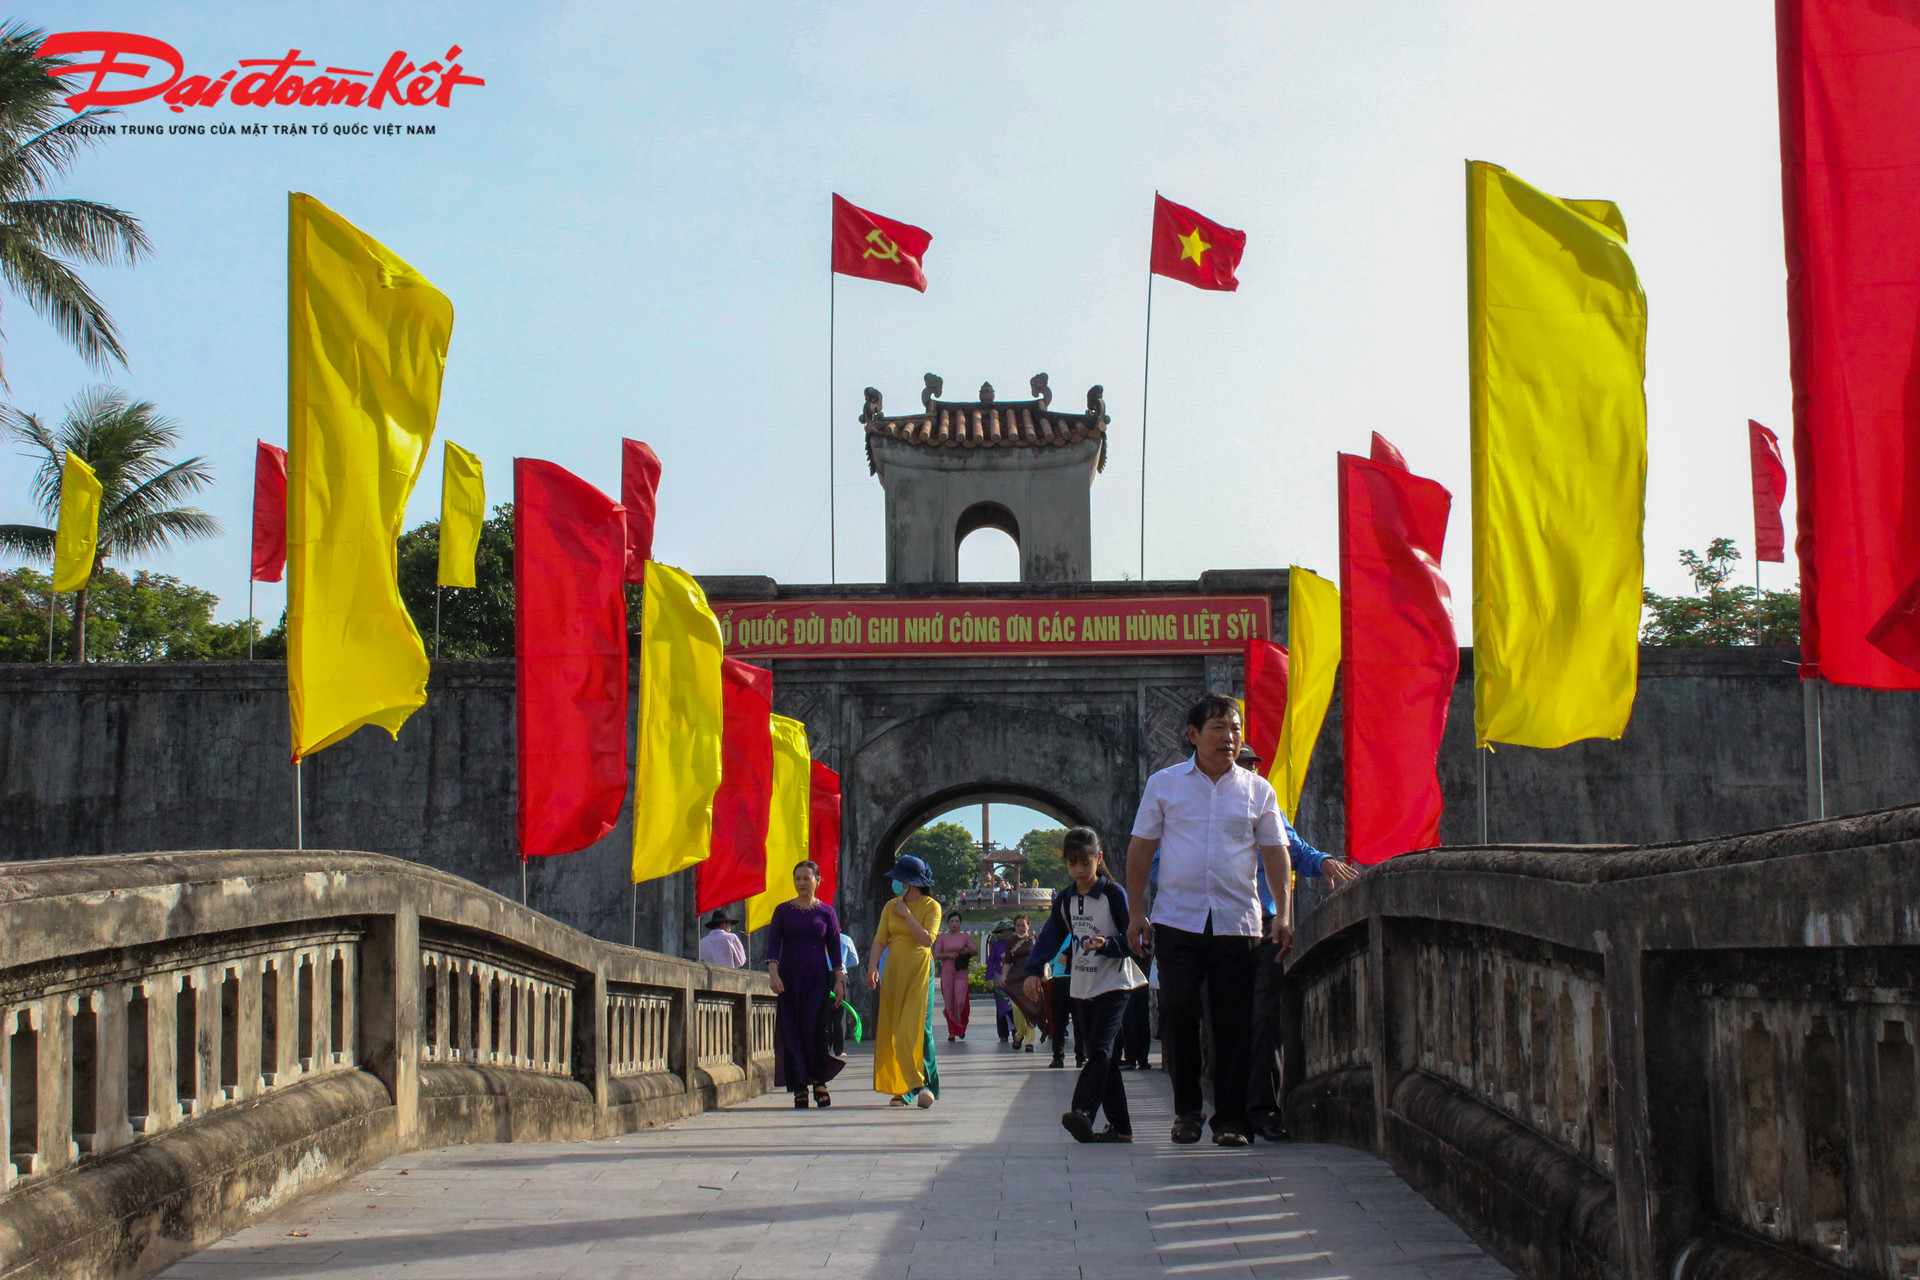 Di tích Thành Cổ Quảng Trị là một trong 7 di tích thành phần thuộc di tích “Thành cổ Quảng Trị và những địa điểm lưu niệm sự kiện 81 ngày đêm năm 1972” được Thủ tướng xếp hạng Di tích Quốc gia đặc biệt theo quyết định số 2383QĐ-TTg ngày 9/12/2013.